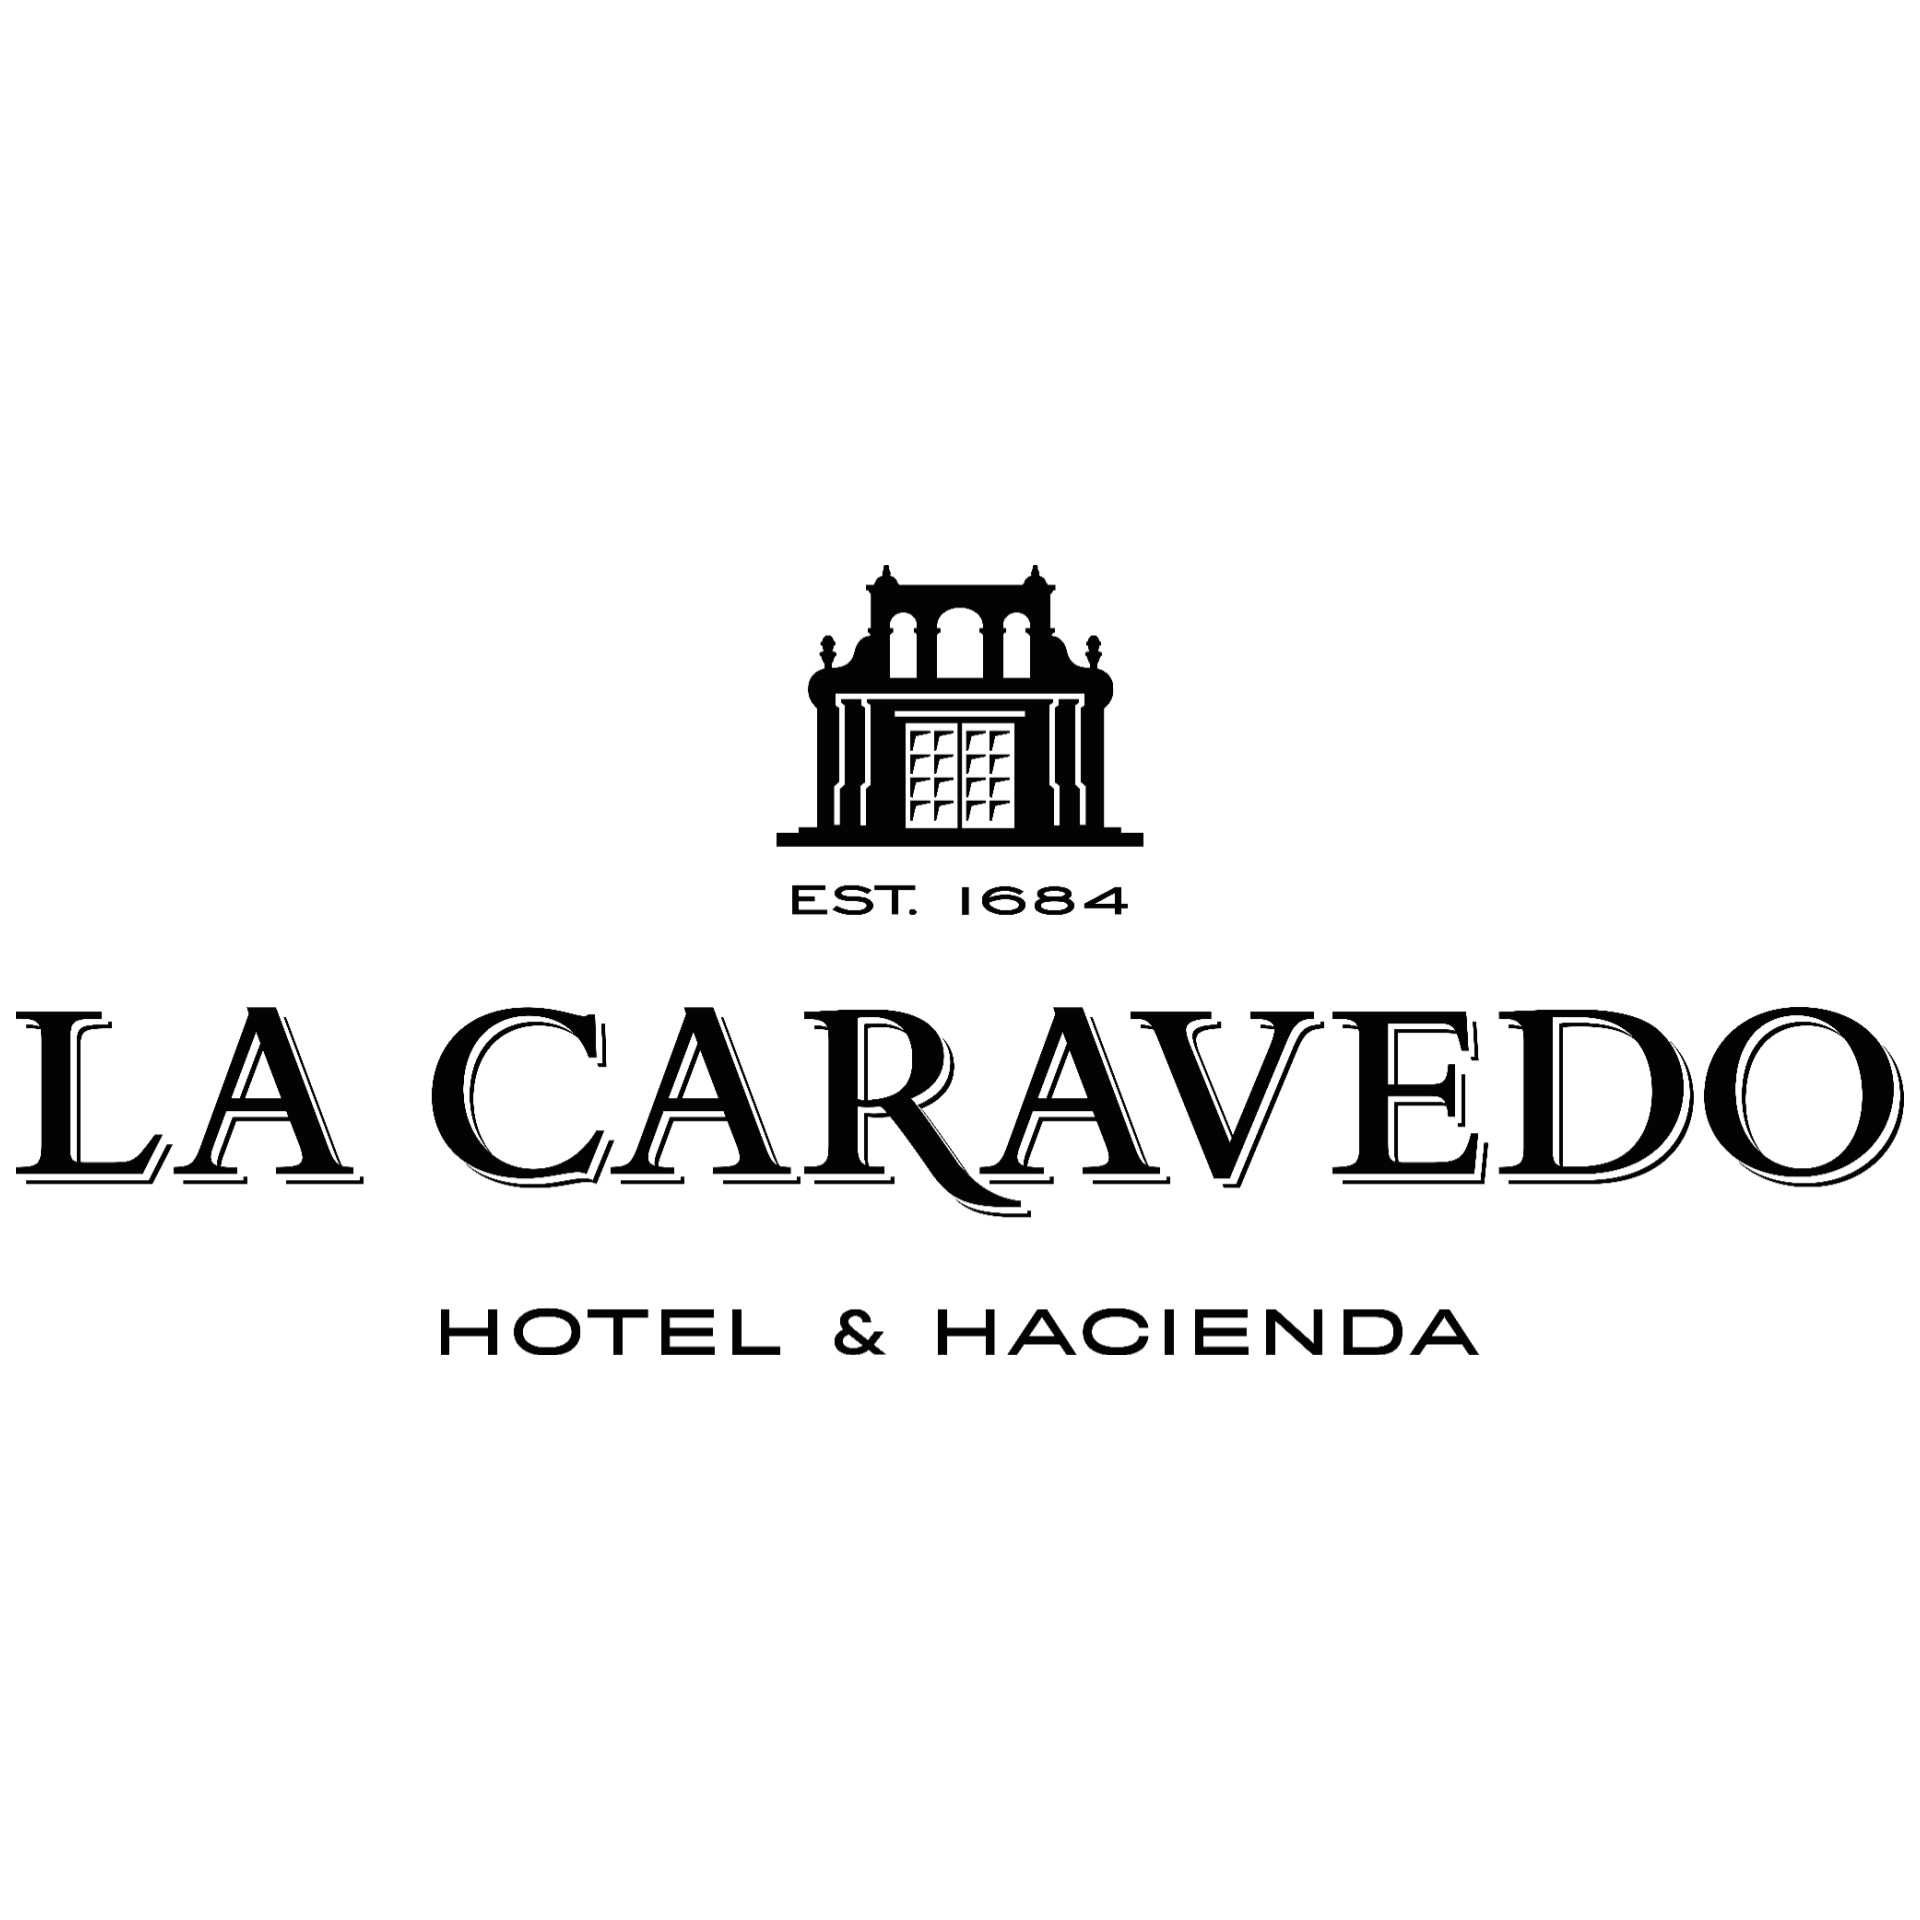 Hotel & Hacienda La Caravedo | Estadía doble de 2 noches con desayuno incluido